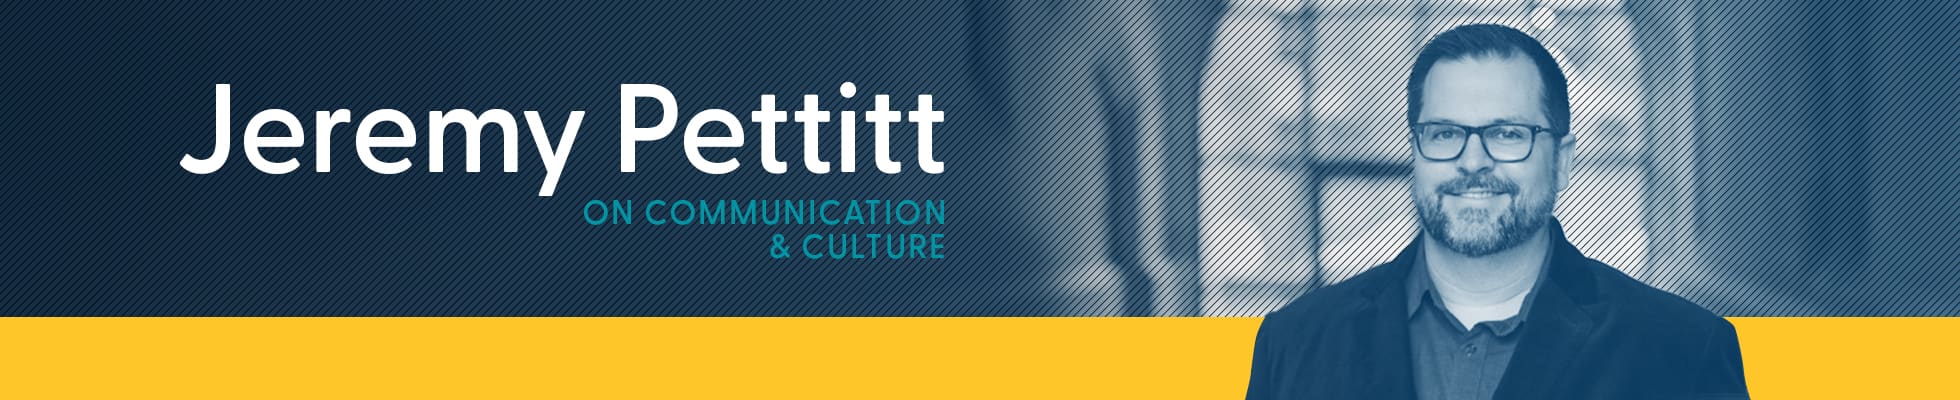 Jeremy Pettitt on Communication and Culture